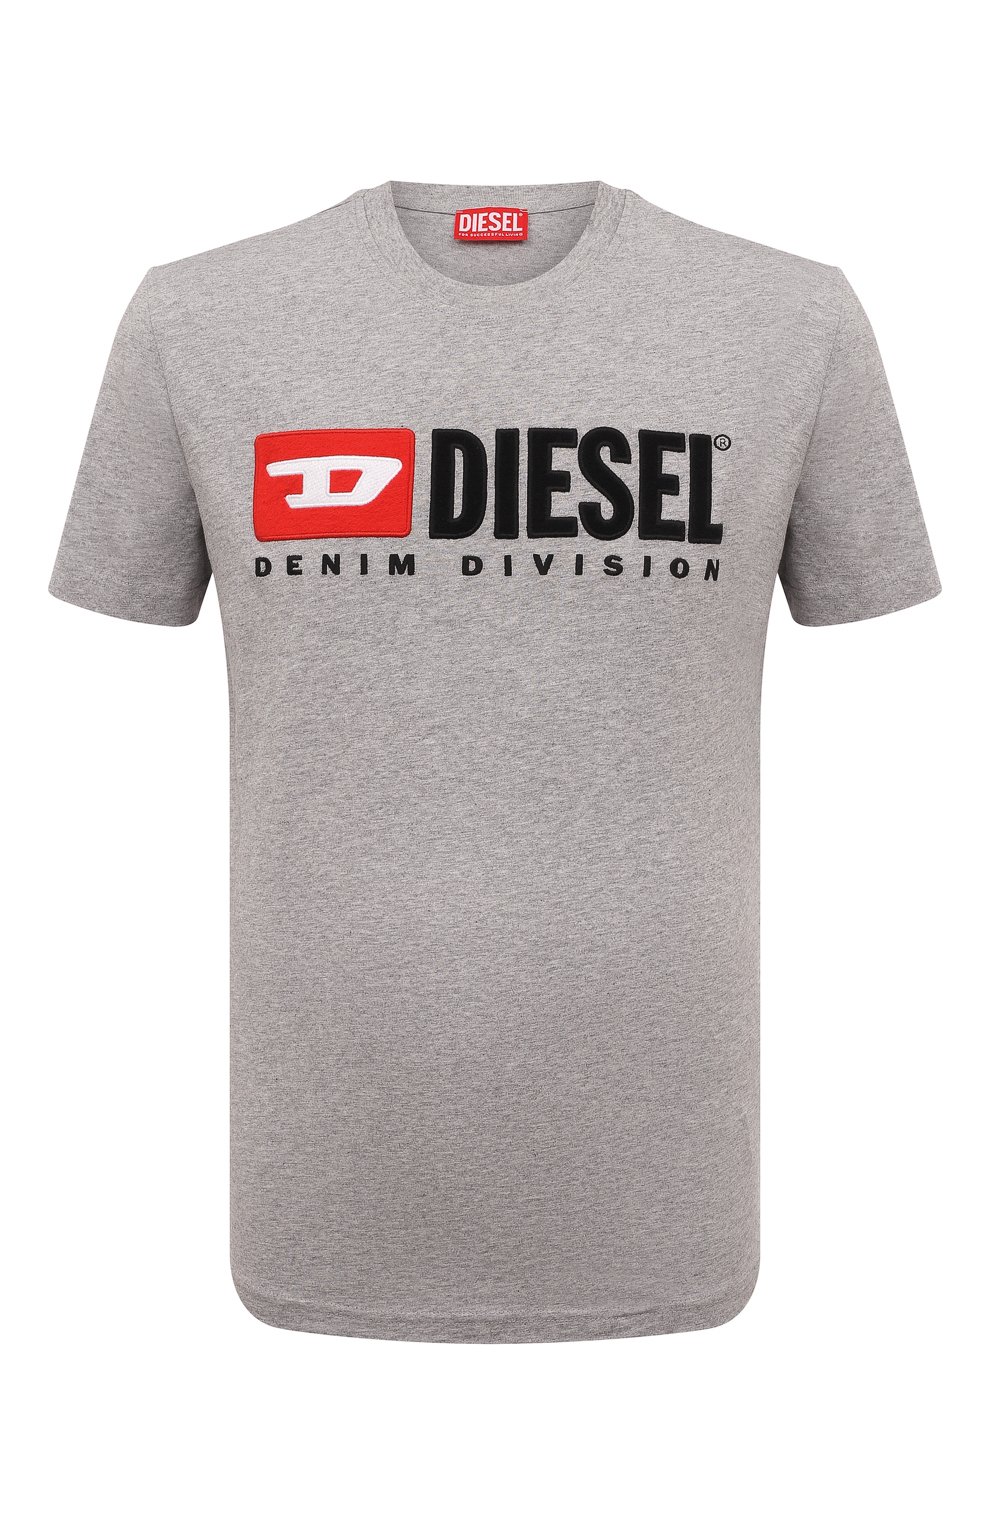 Футболки Diesel, Хлопковая футболка Diesel, Бангладеш, Серый, Хлопок: 100%;, 13290279  - купить